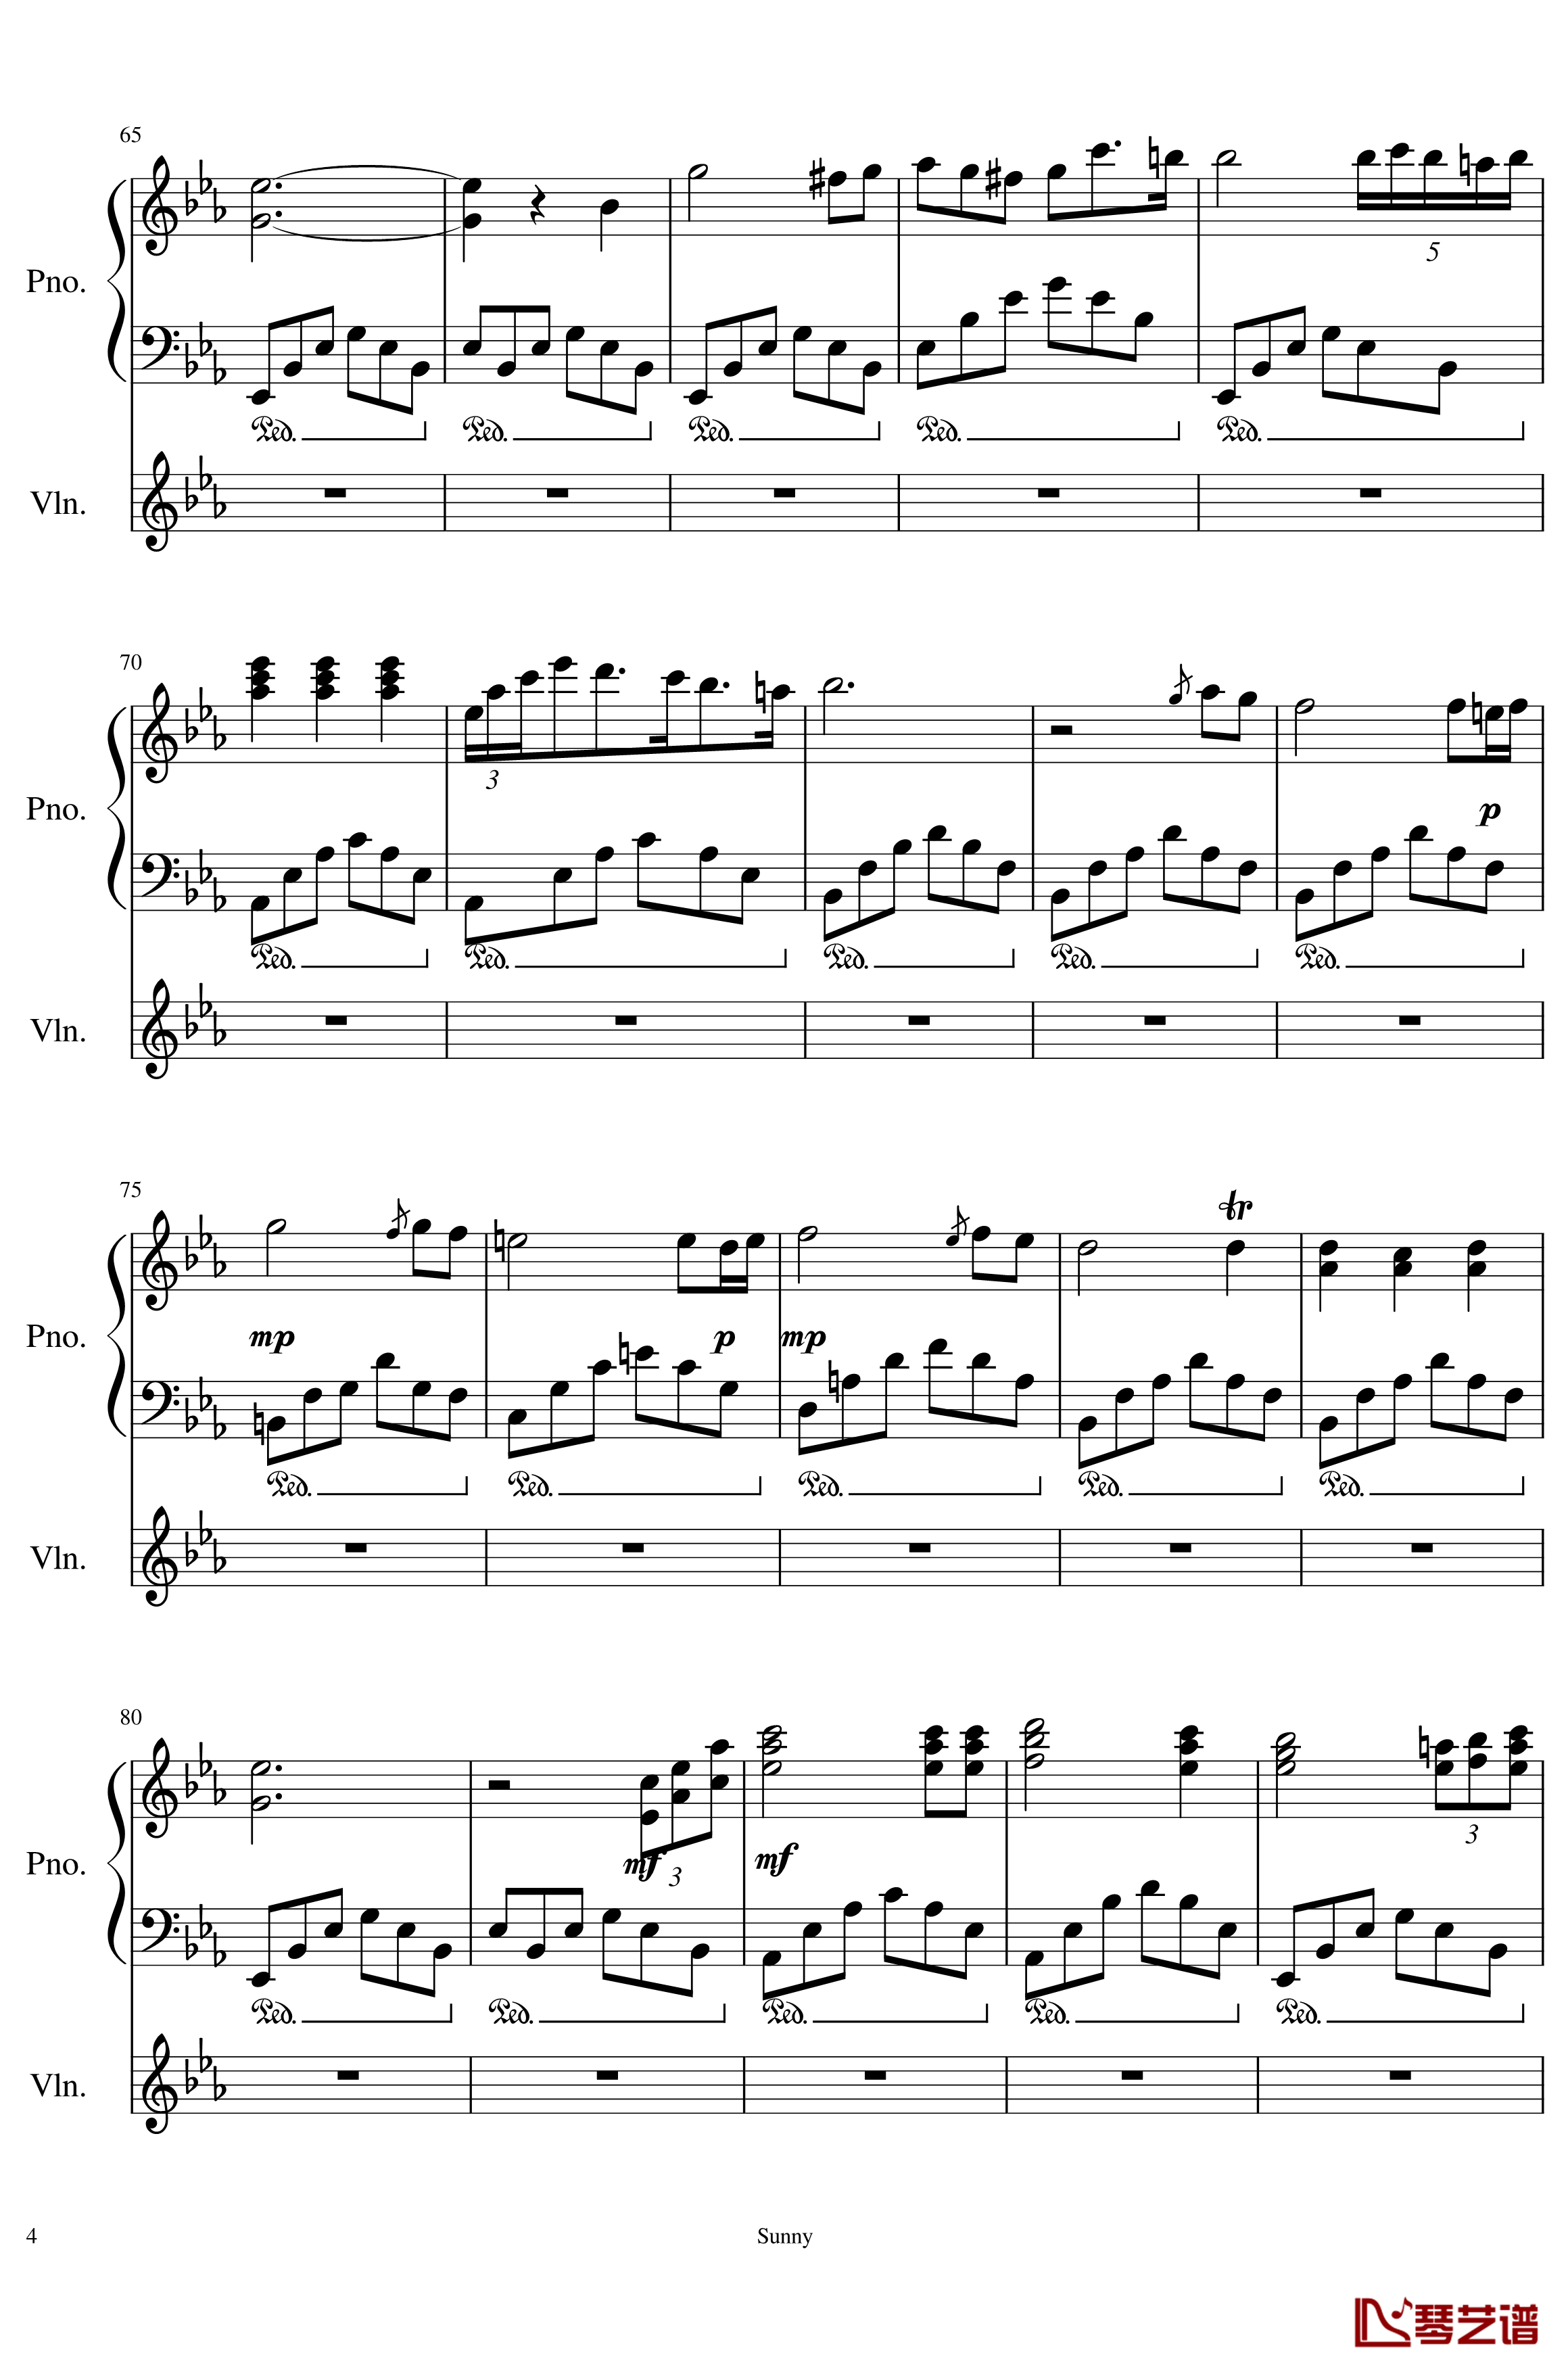 Op.1-1 钢琴谱-My First Music-SunnyAK474